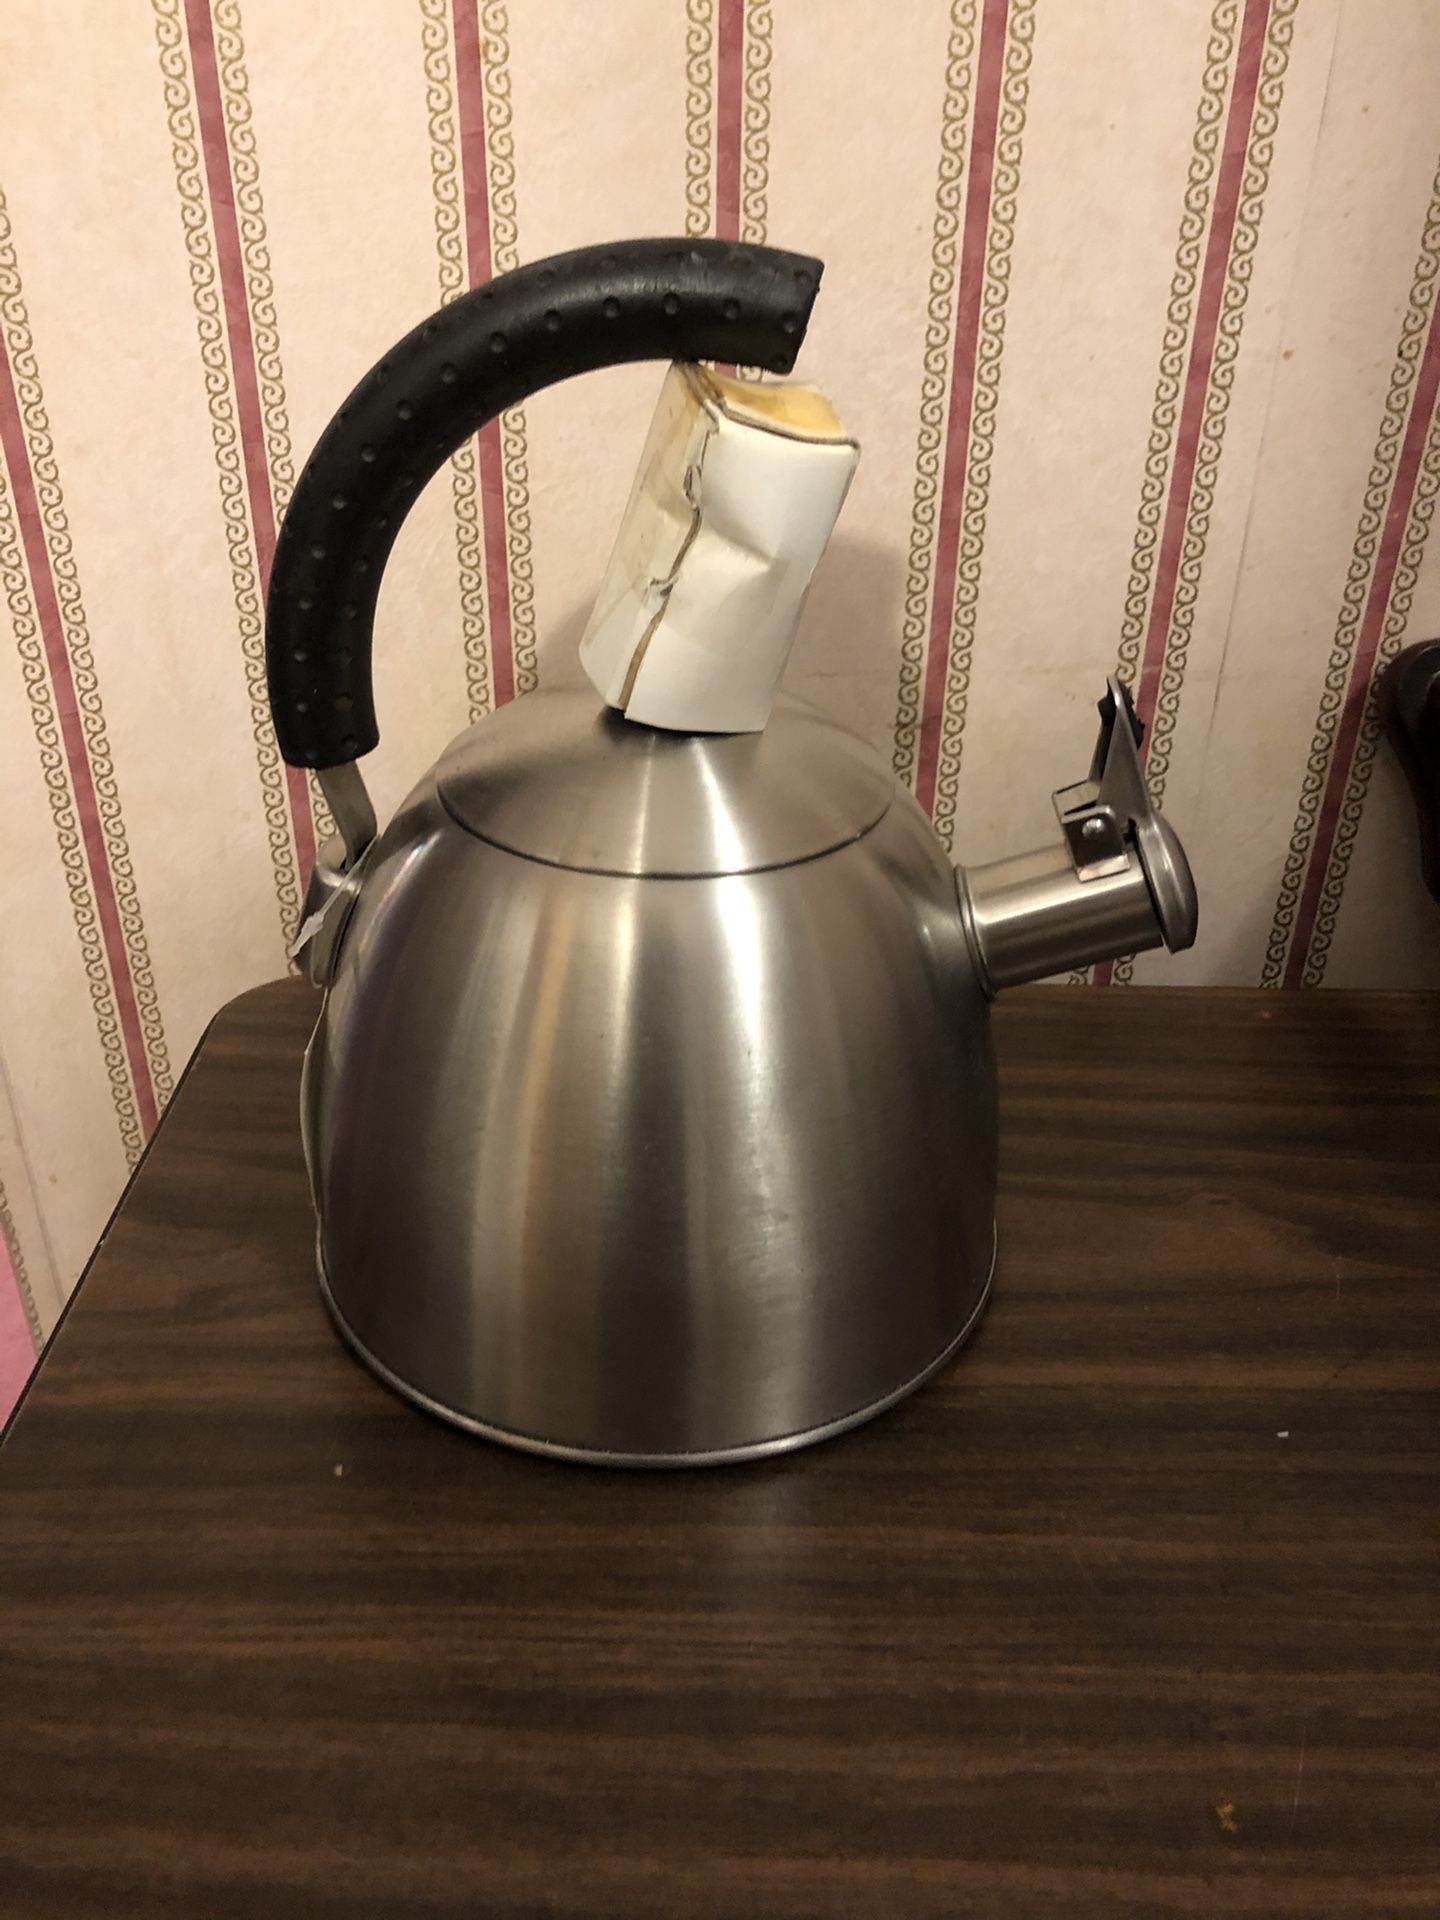 Brushed nickel tea kettle